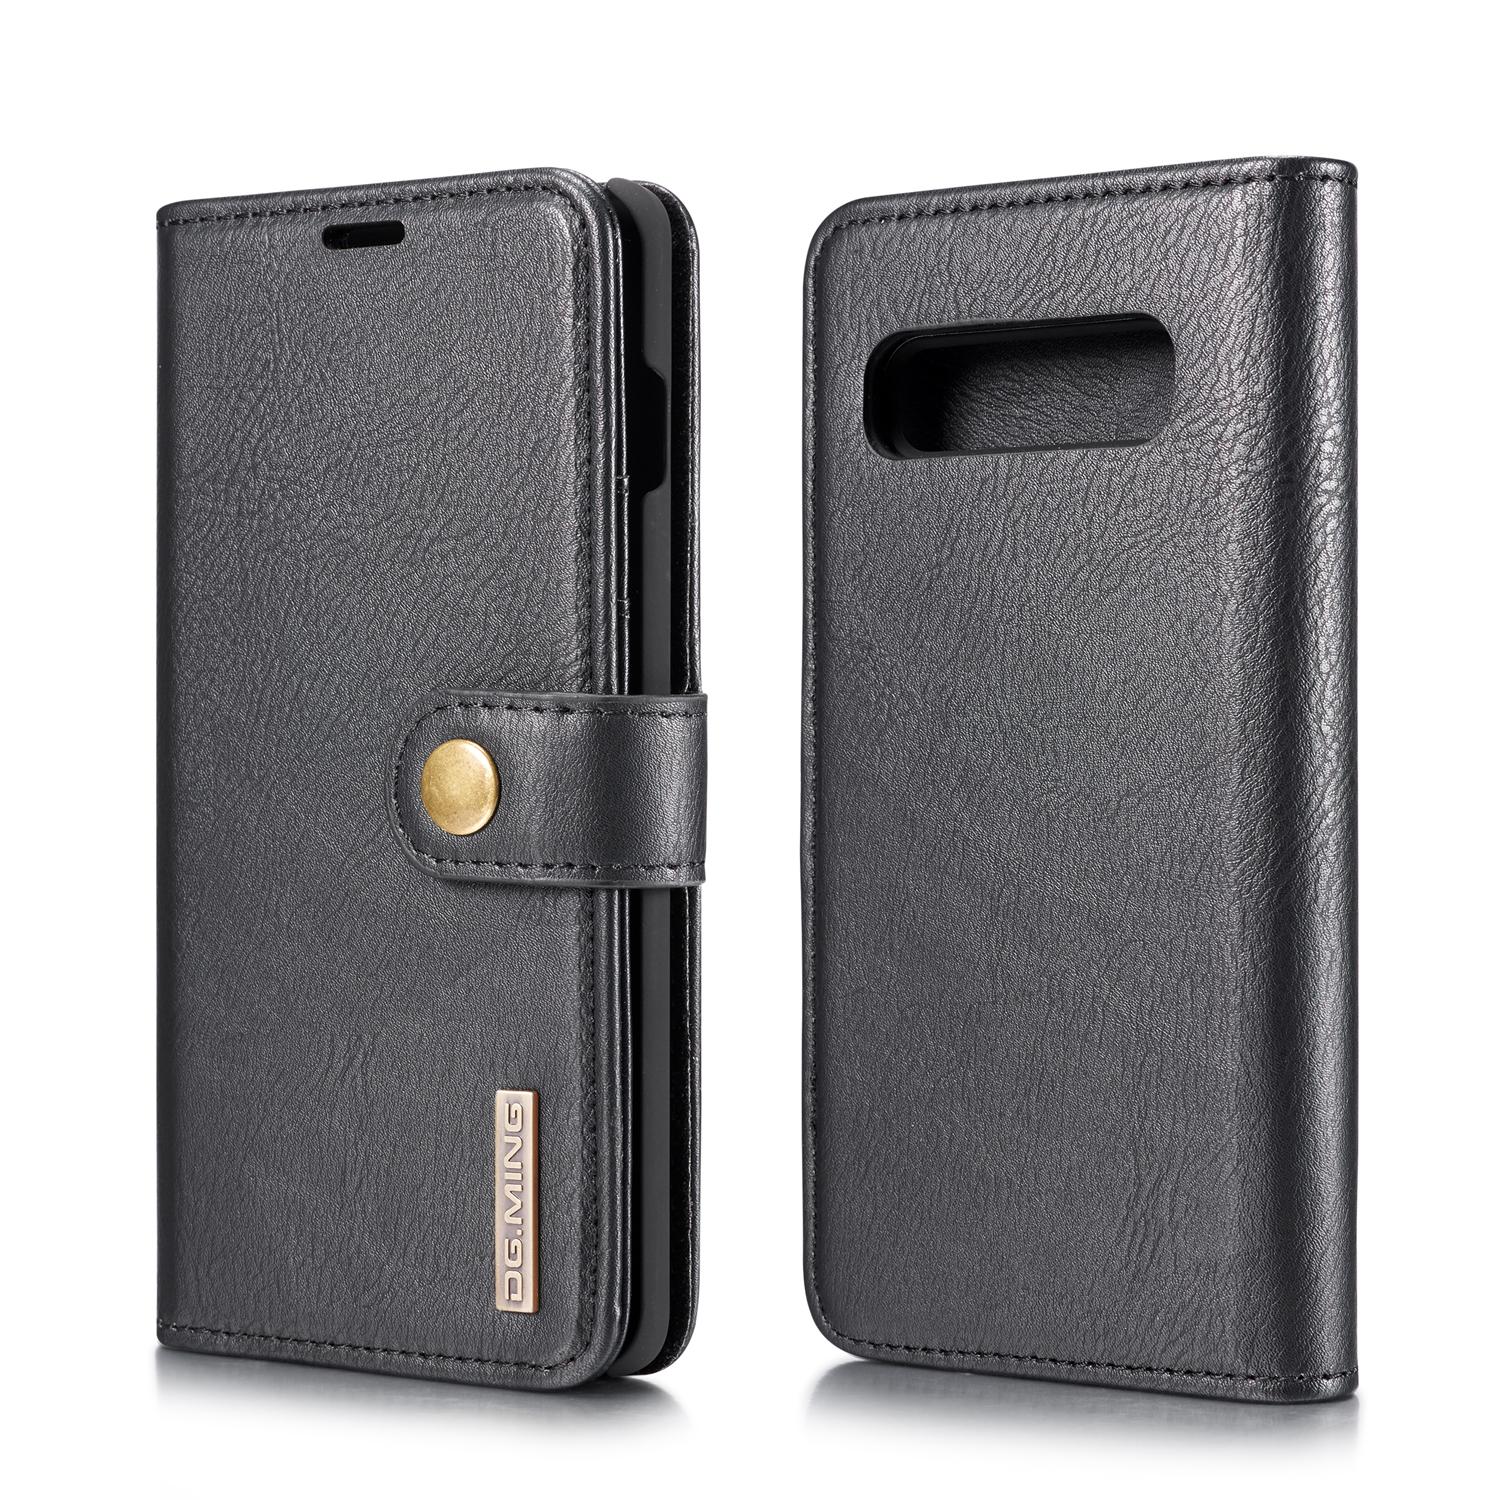 Samsung Galaxy S10 Plus Plånboksfodral med avtagbart skal, svart